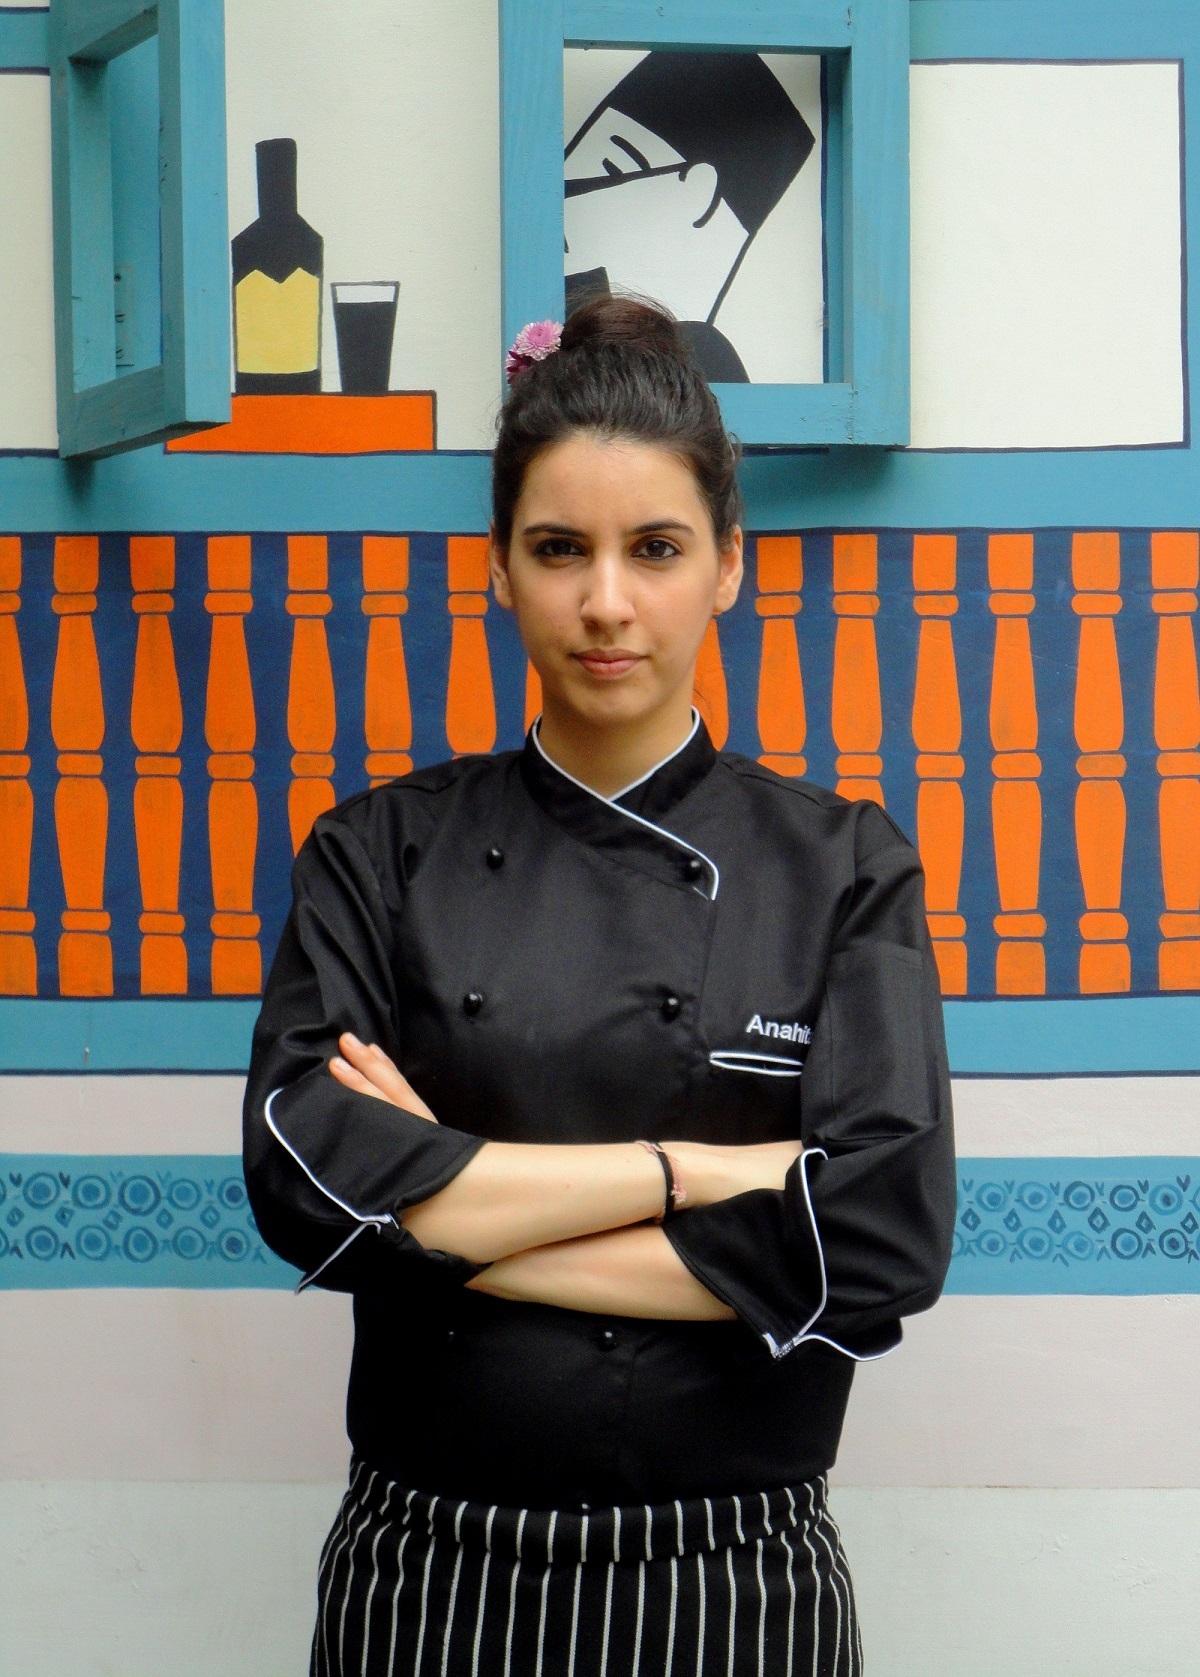 Chef Anahita Dhondy